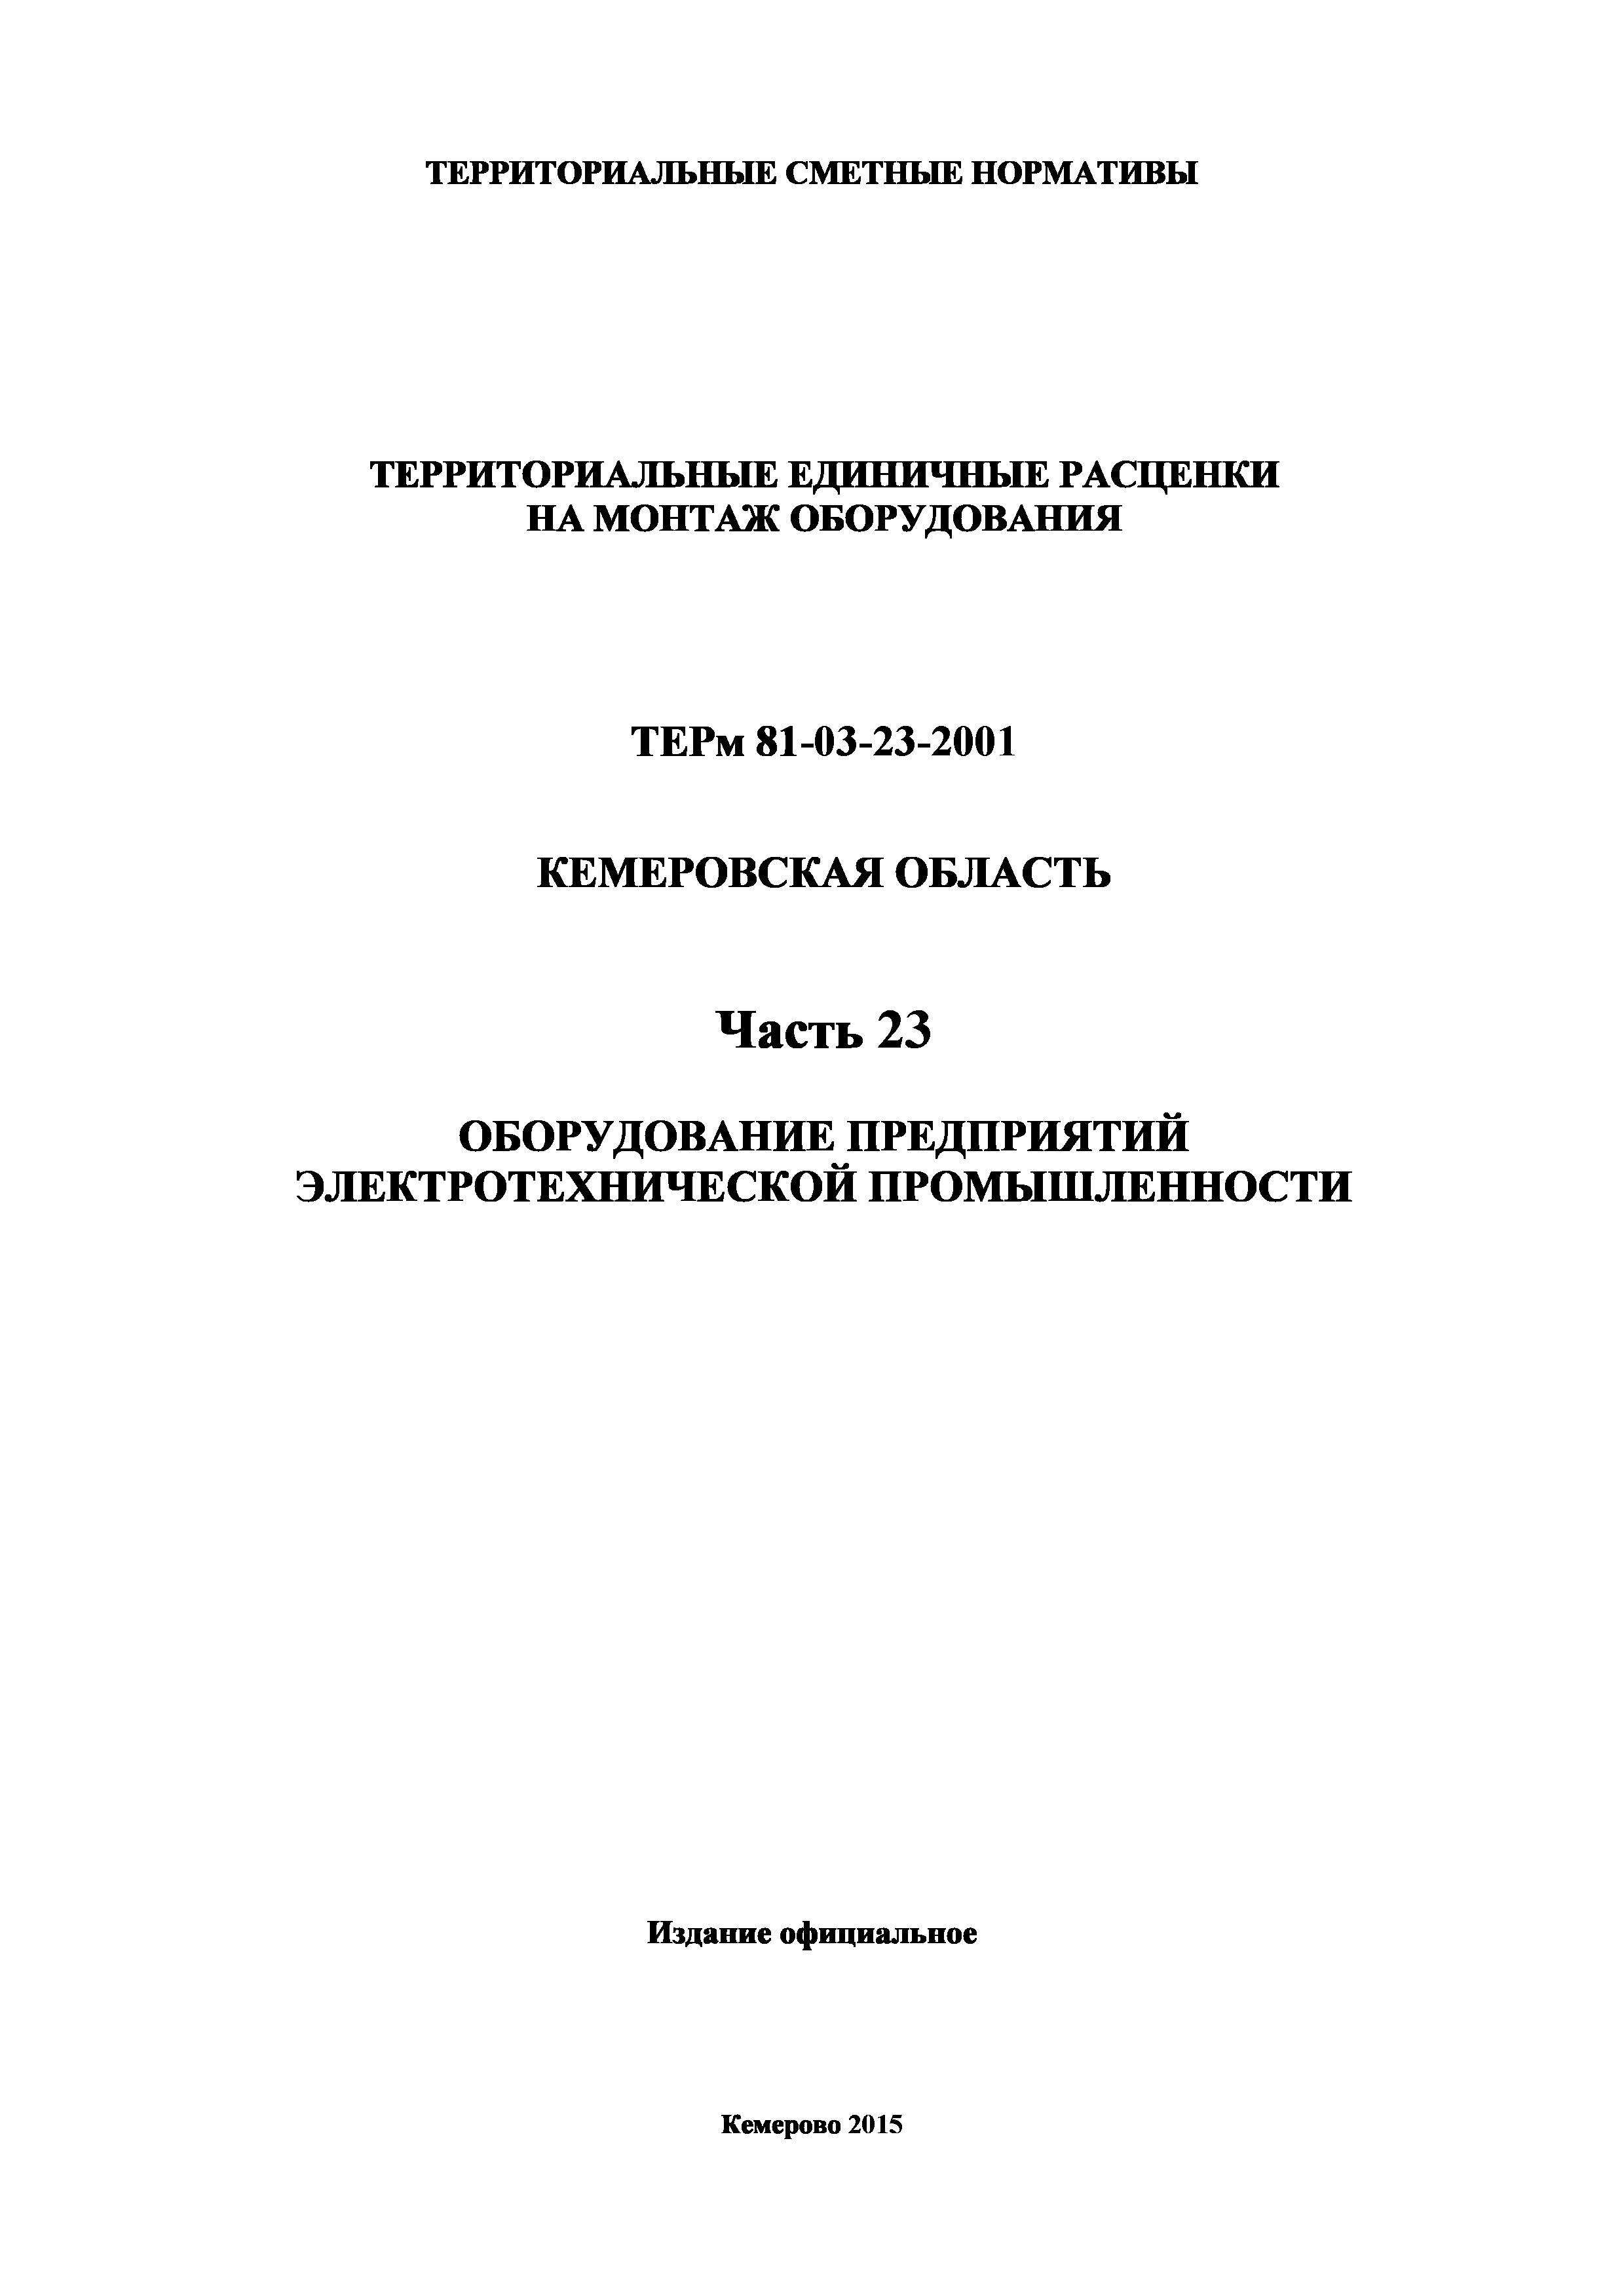 ТЕРм Кемеровская область 81-03-23-2001